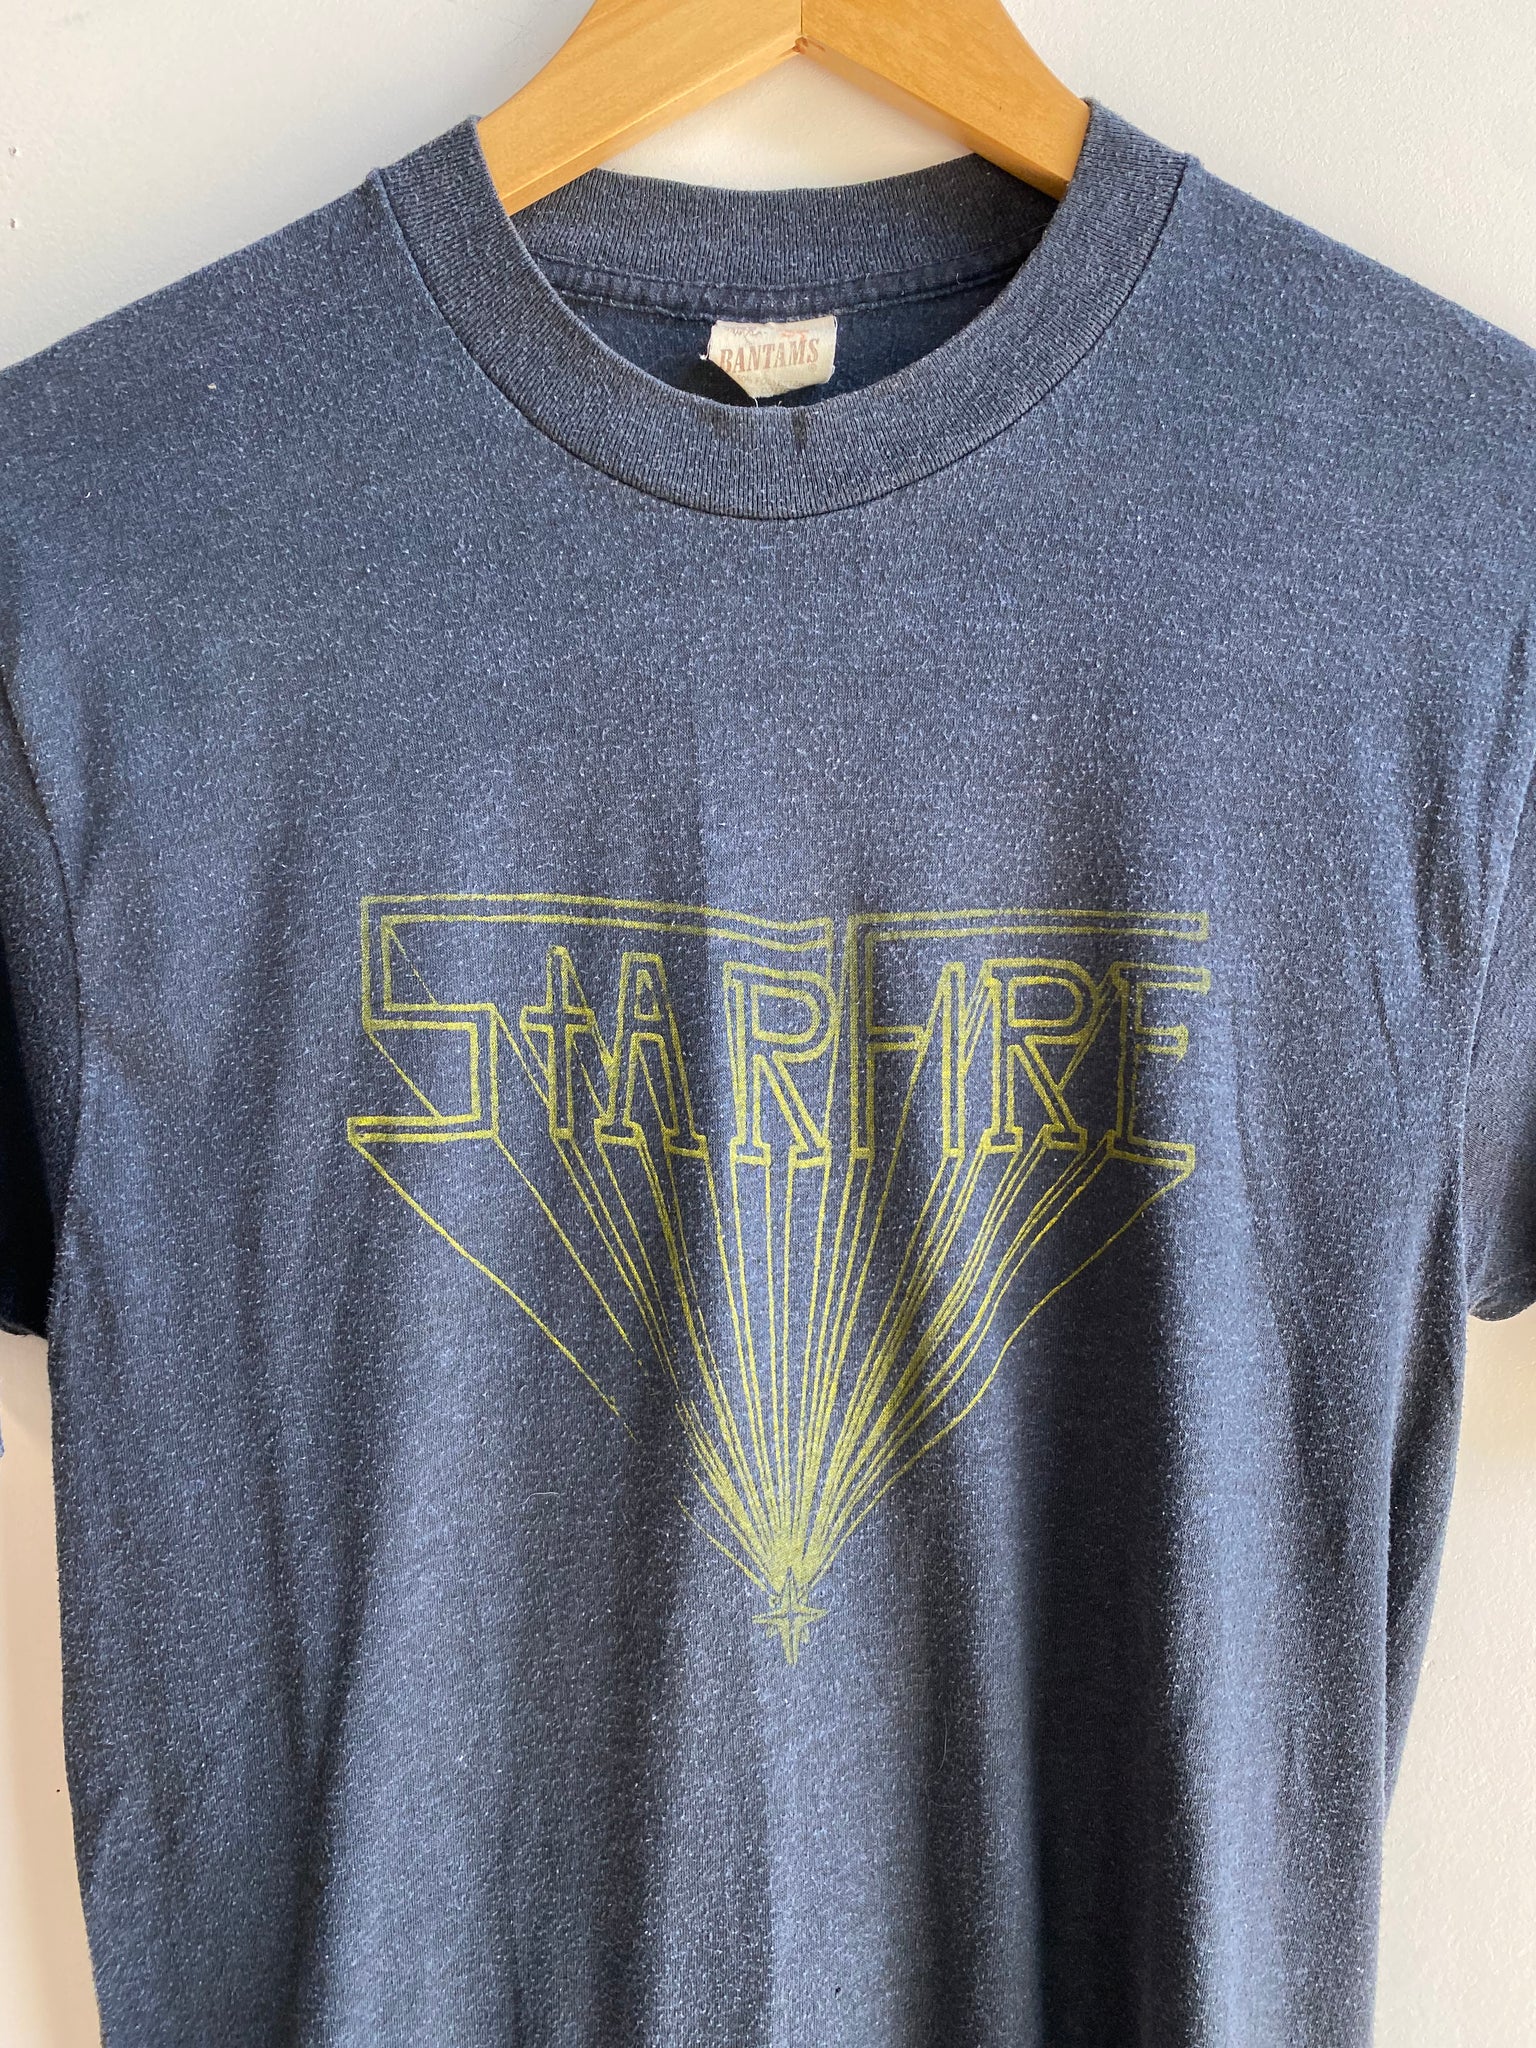 70s Starfire Tee Shirt